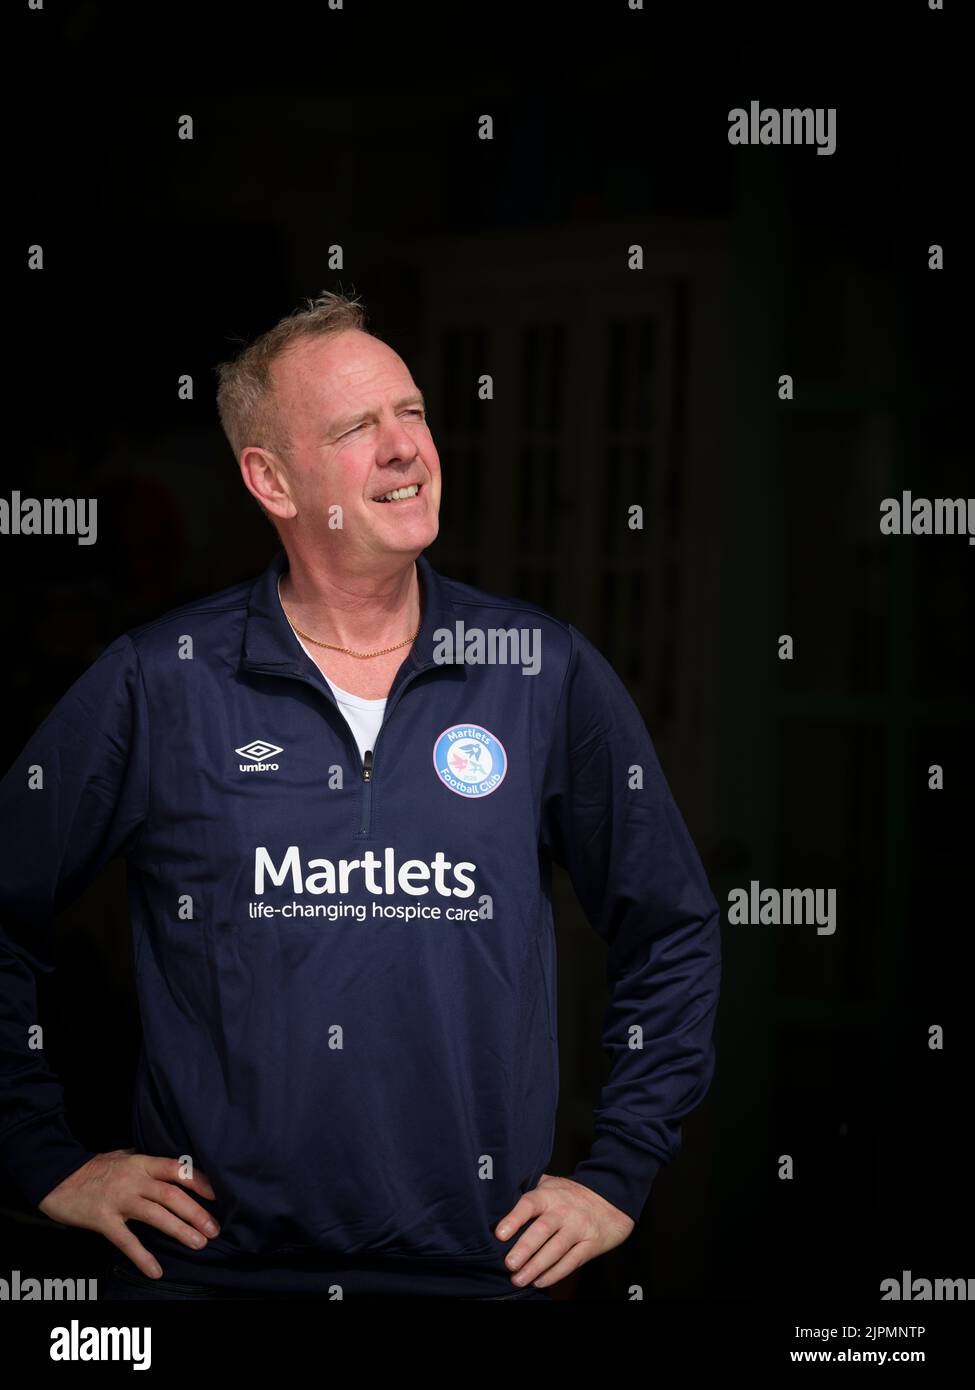 Sólo para uso editorial - Norman Cook con la camiseta de fútbol elegida por la organización benéfica Martlets. Fotografiado en su casa frente al mar en Hove, East Sussex, Reino Unido. Marzo 2022. Foto de Jim Holden Foto de stock